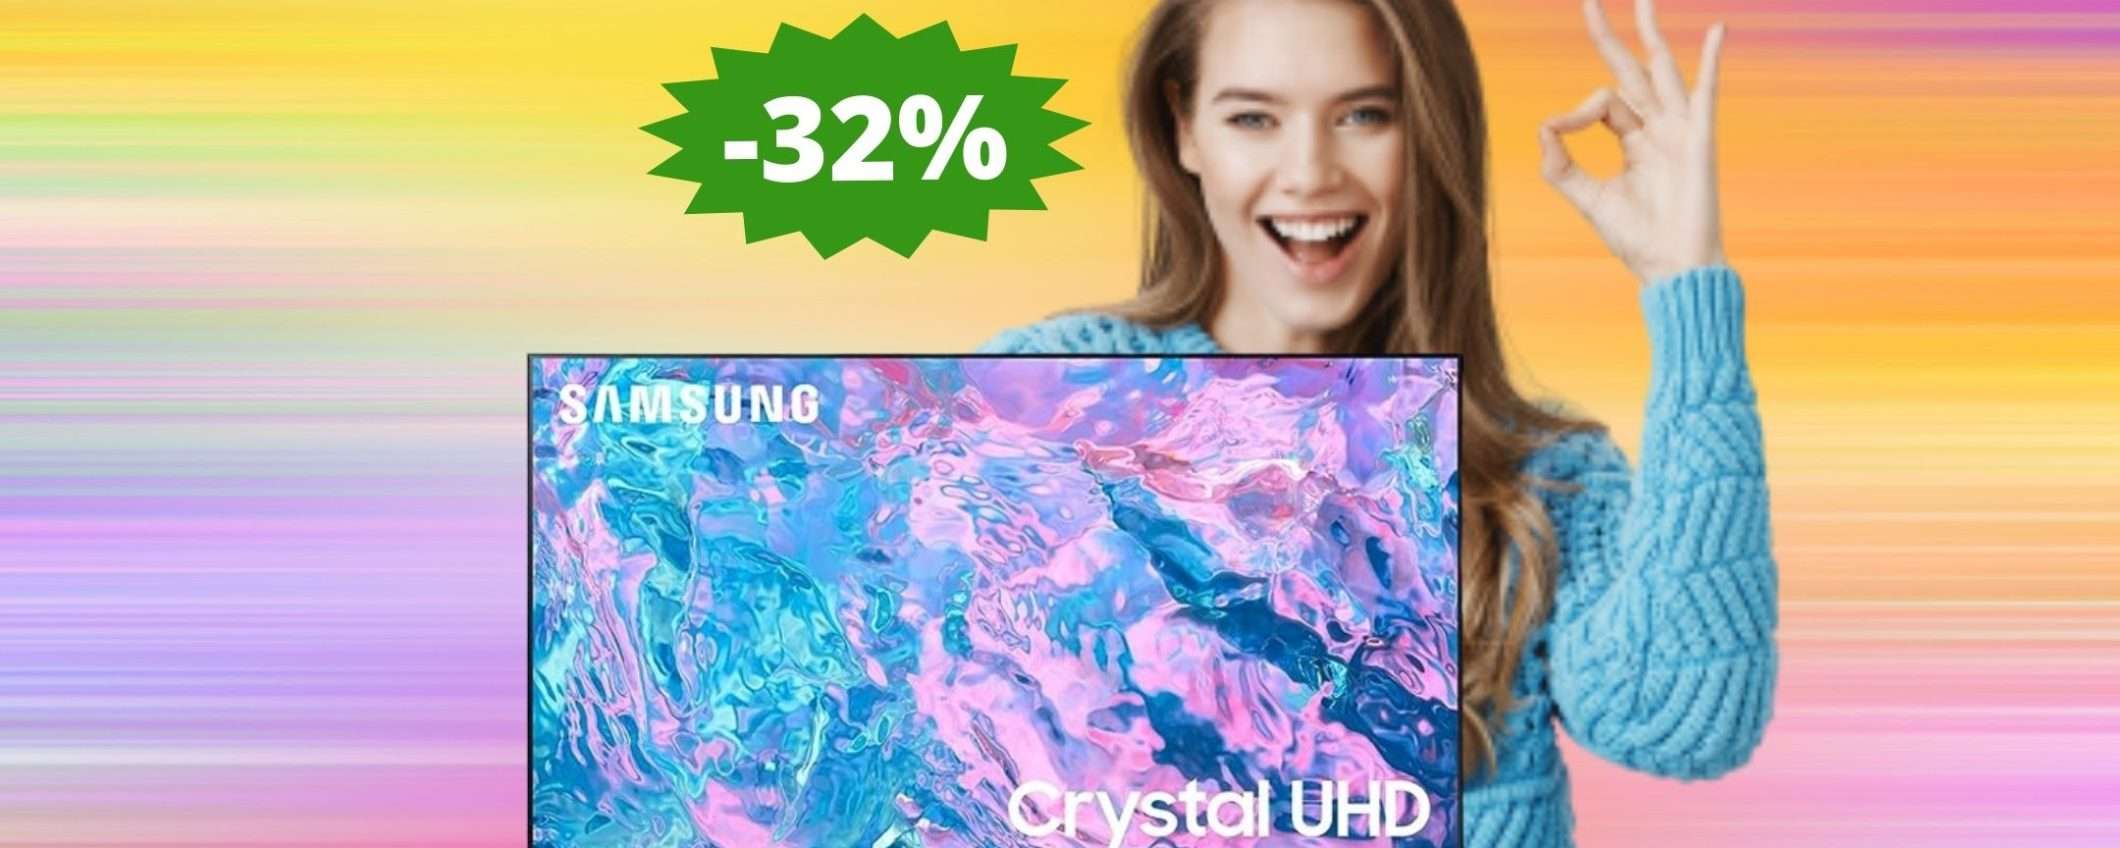 Smart TV Samsung Crystal UHD: un AFFARE da non perdere (-32%)